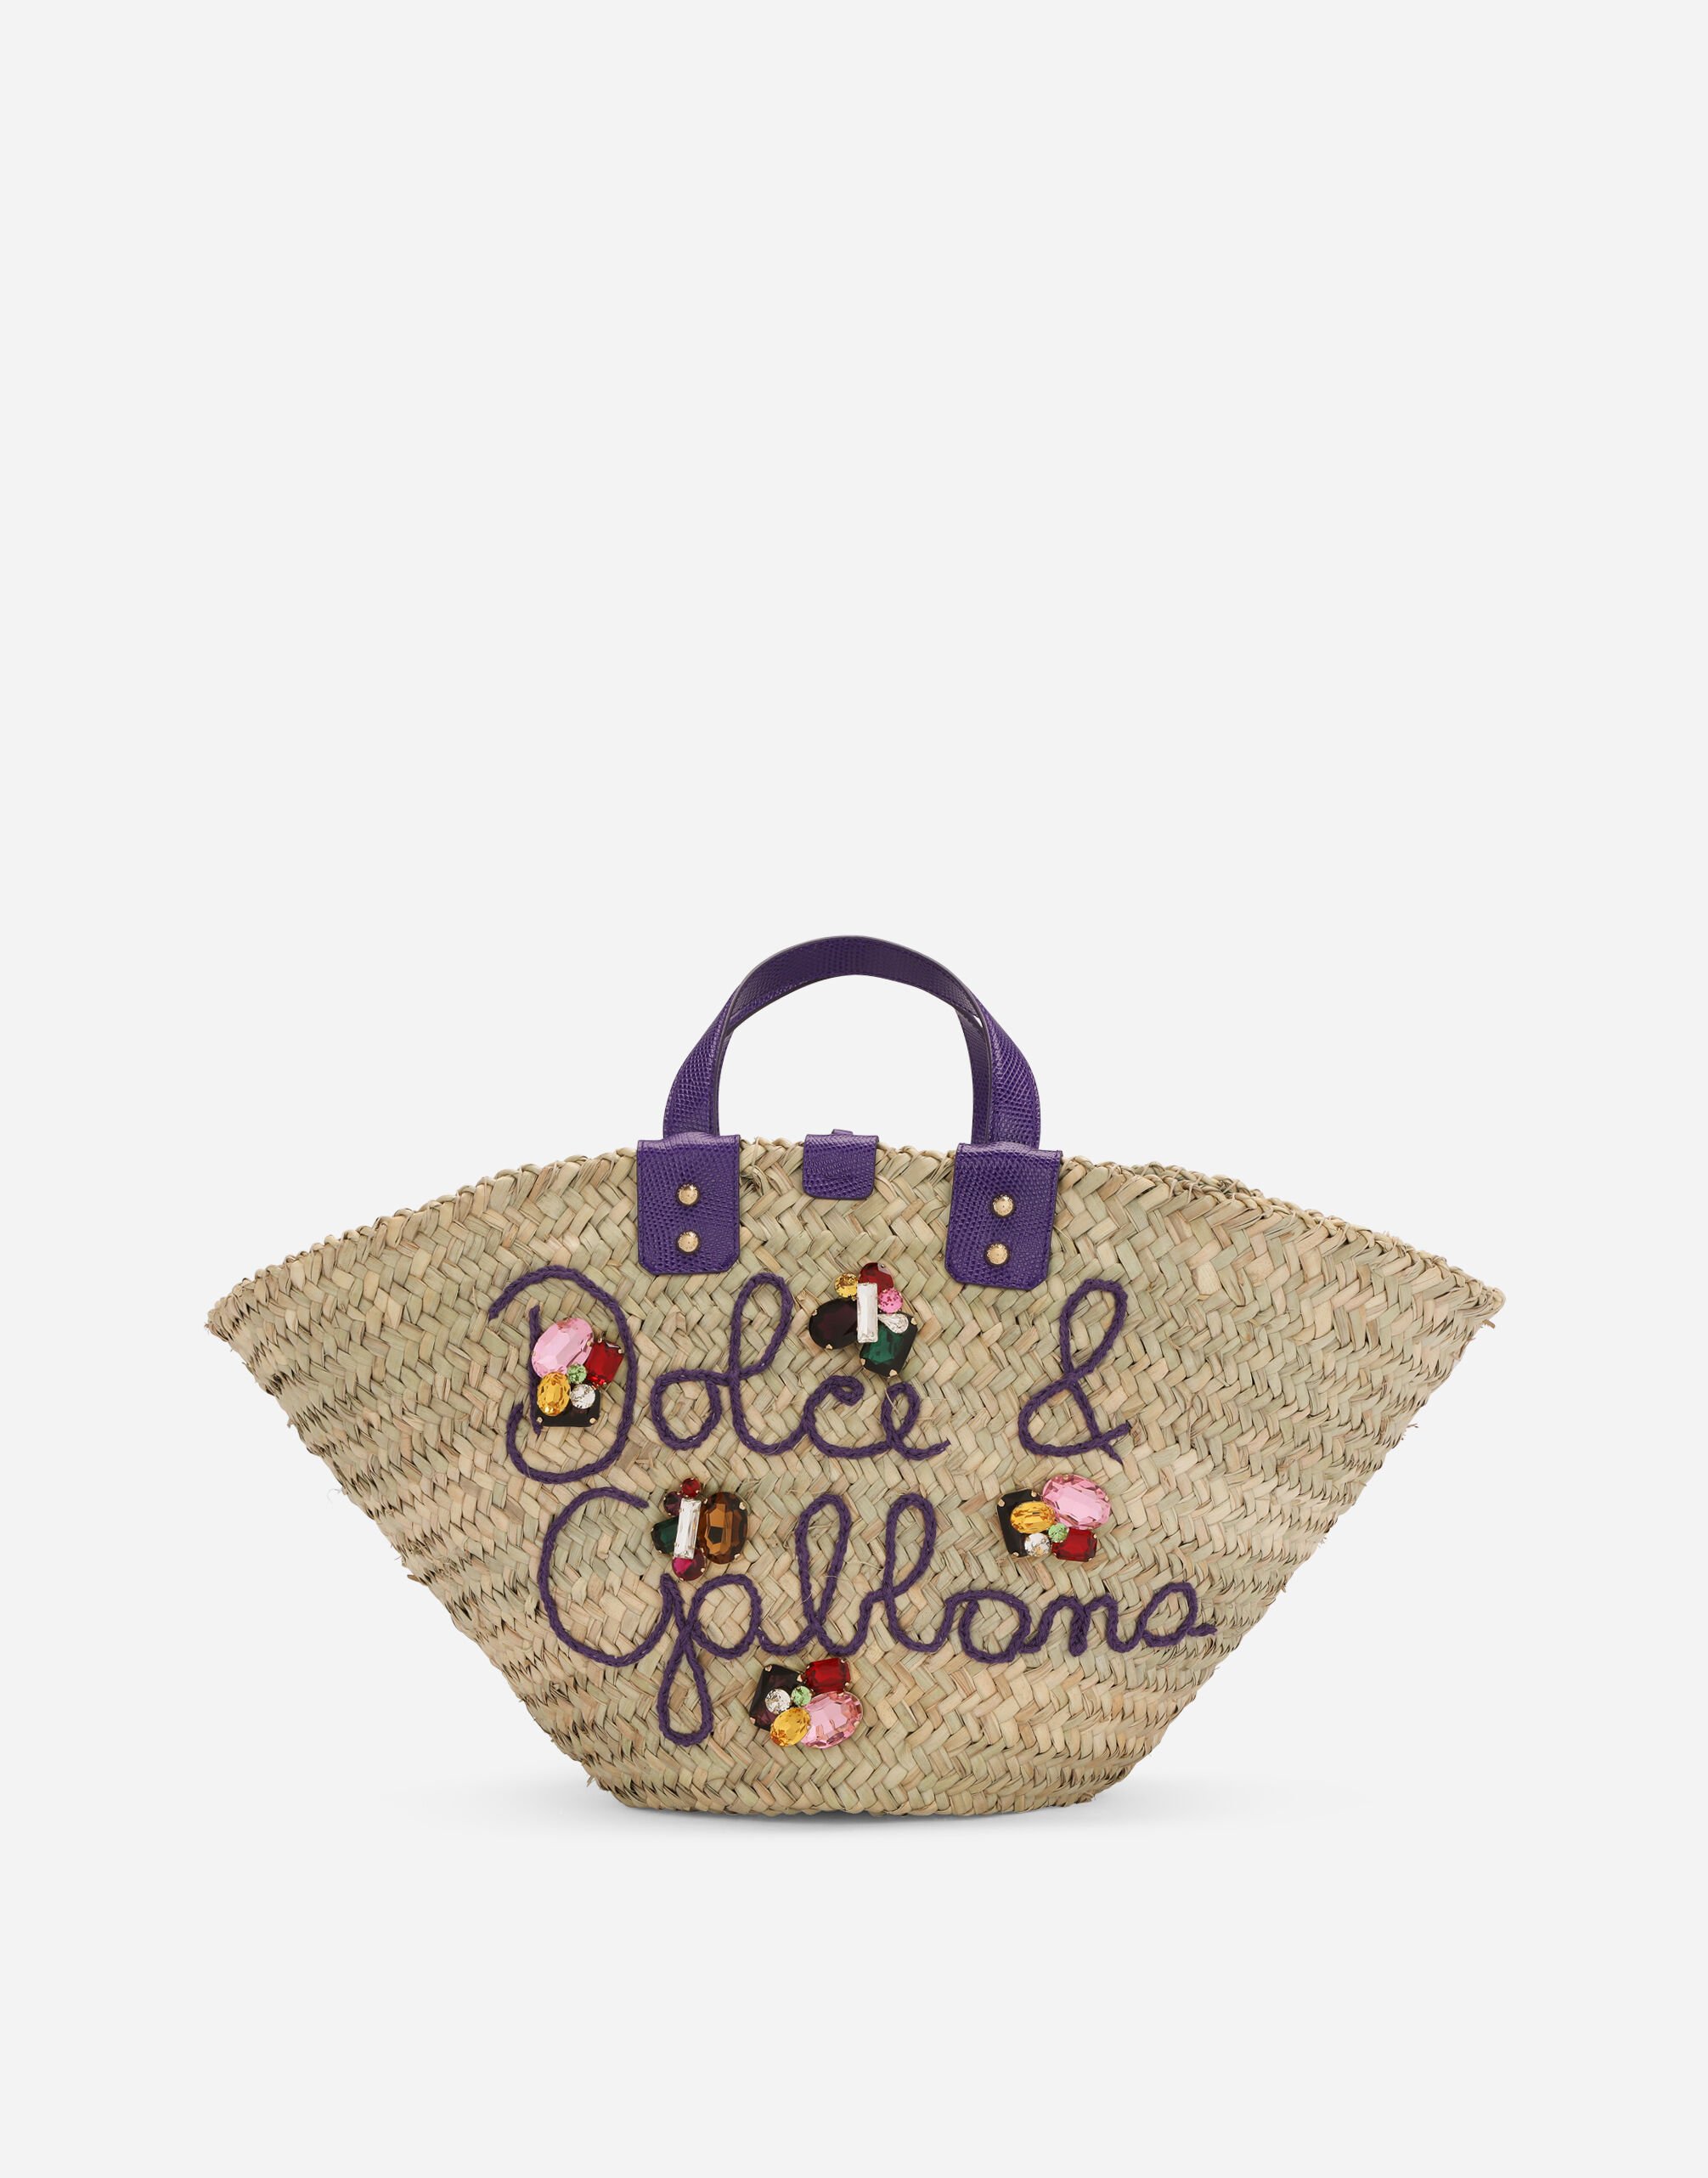 Dolce & Gabbana حقيبة كيندرا قش مطرزة متعدد الألوان BB7270AR355